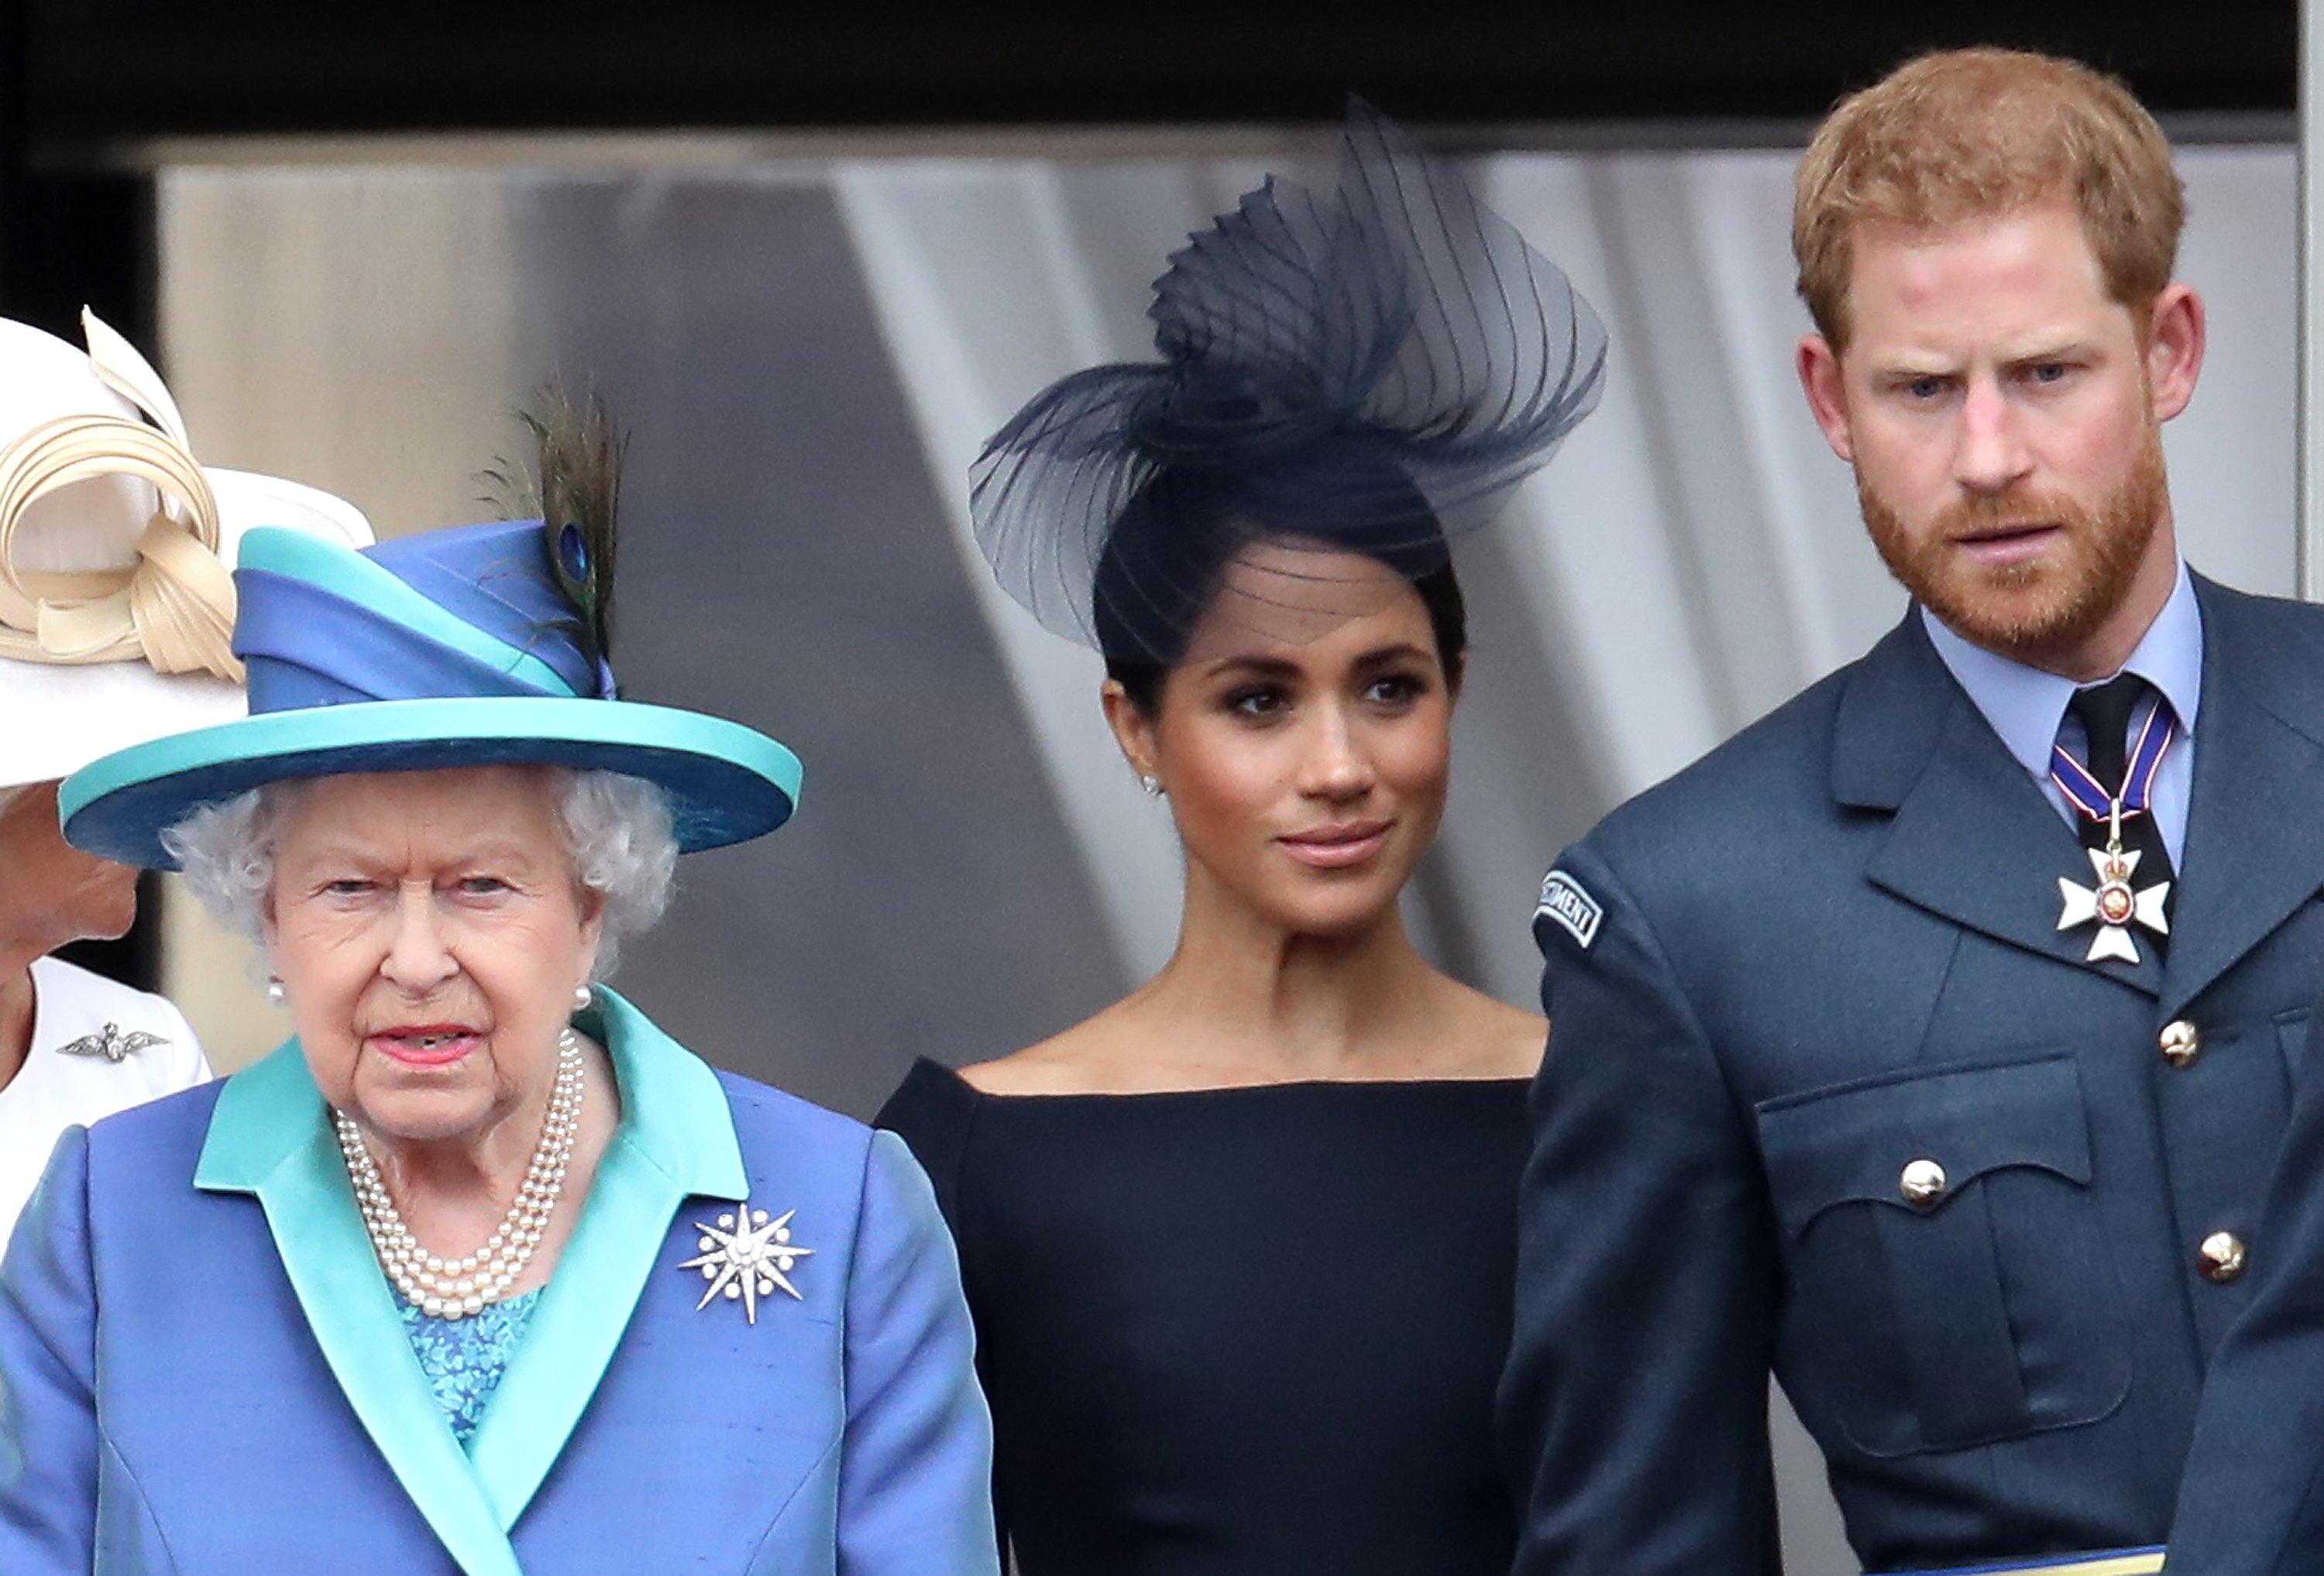 La reina Elizabeth II, el príncipe Harry y Meghan Markle en Londres 2018. | Foto: Getty Images